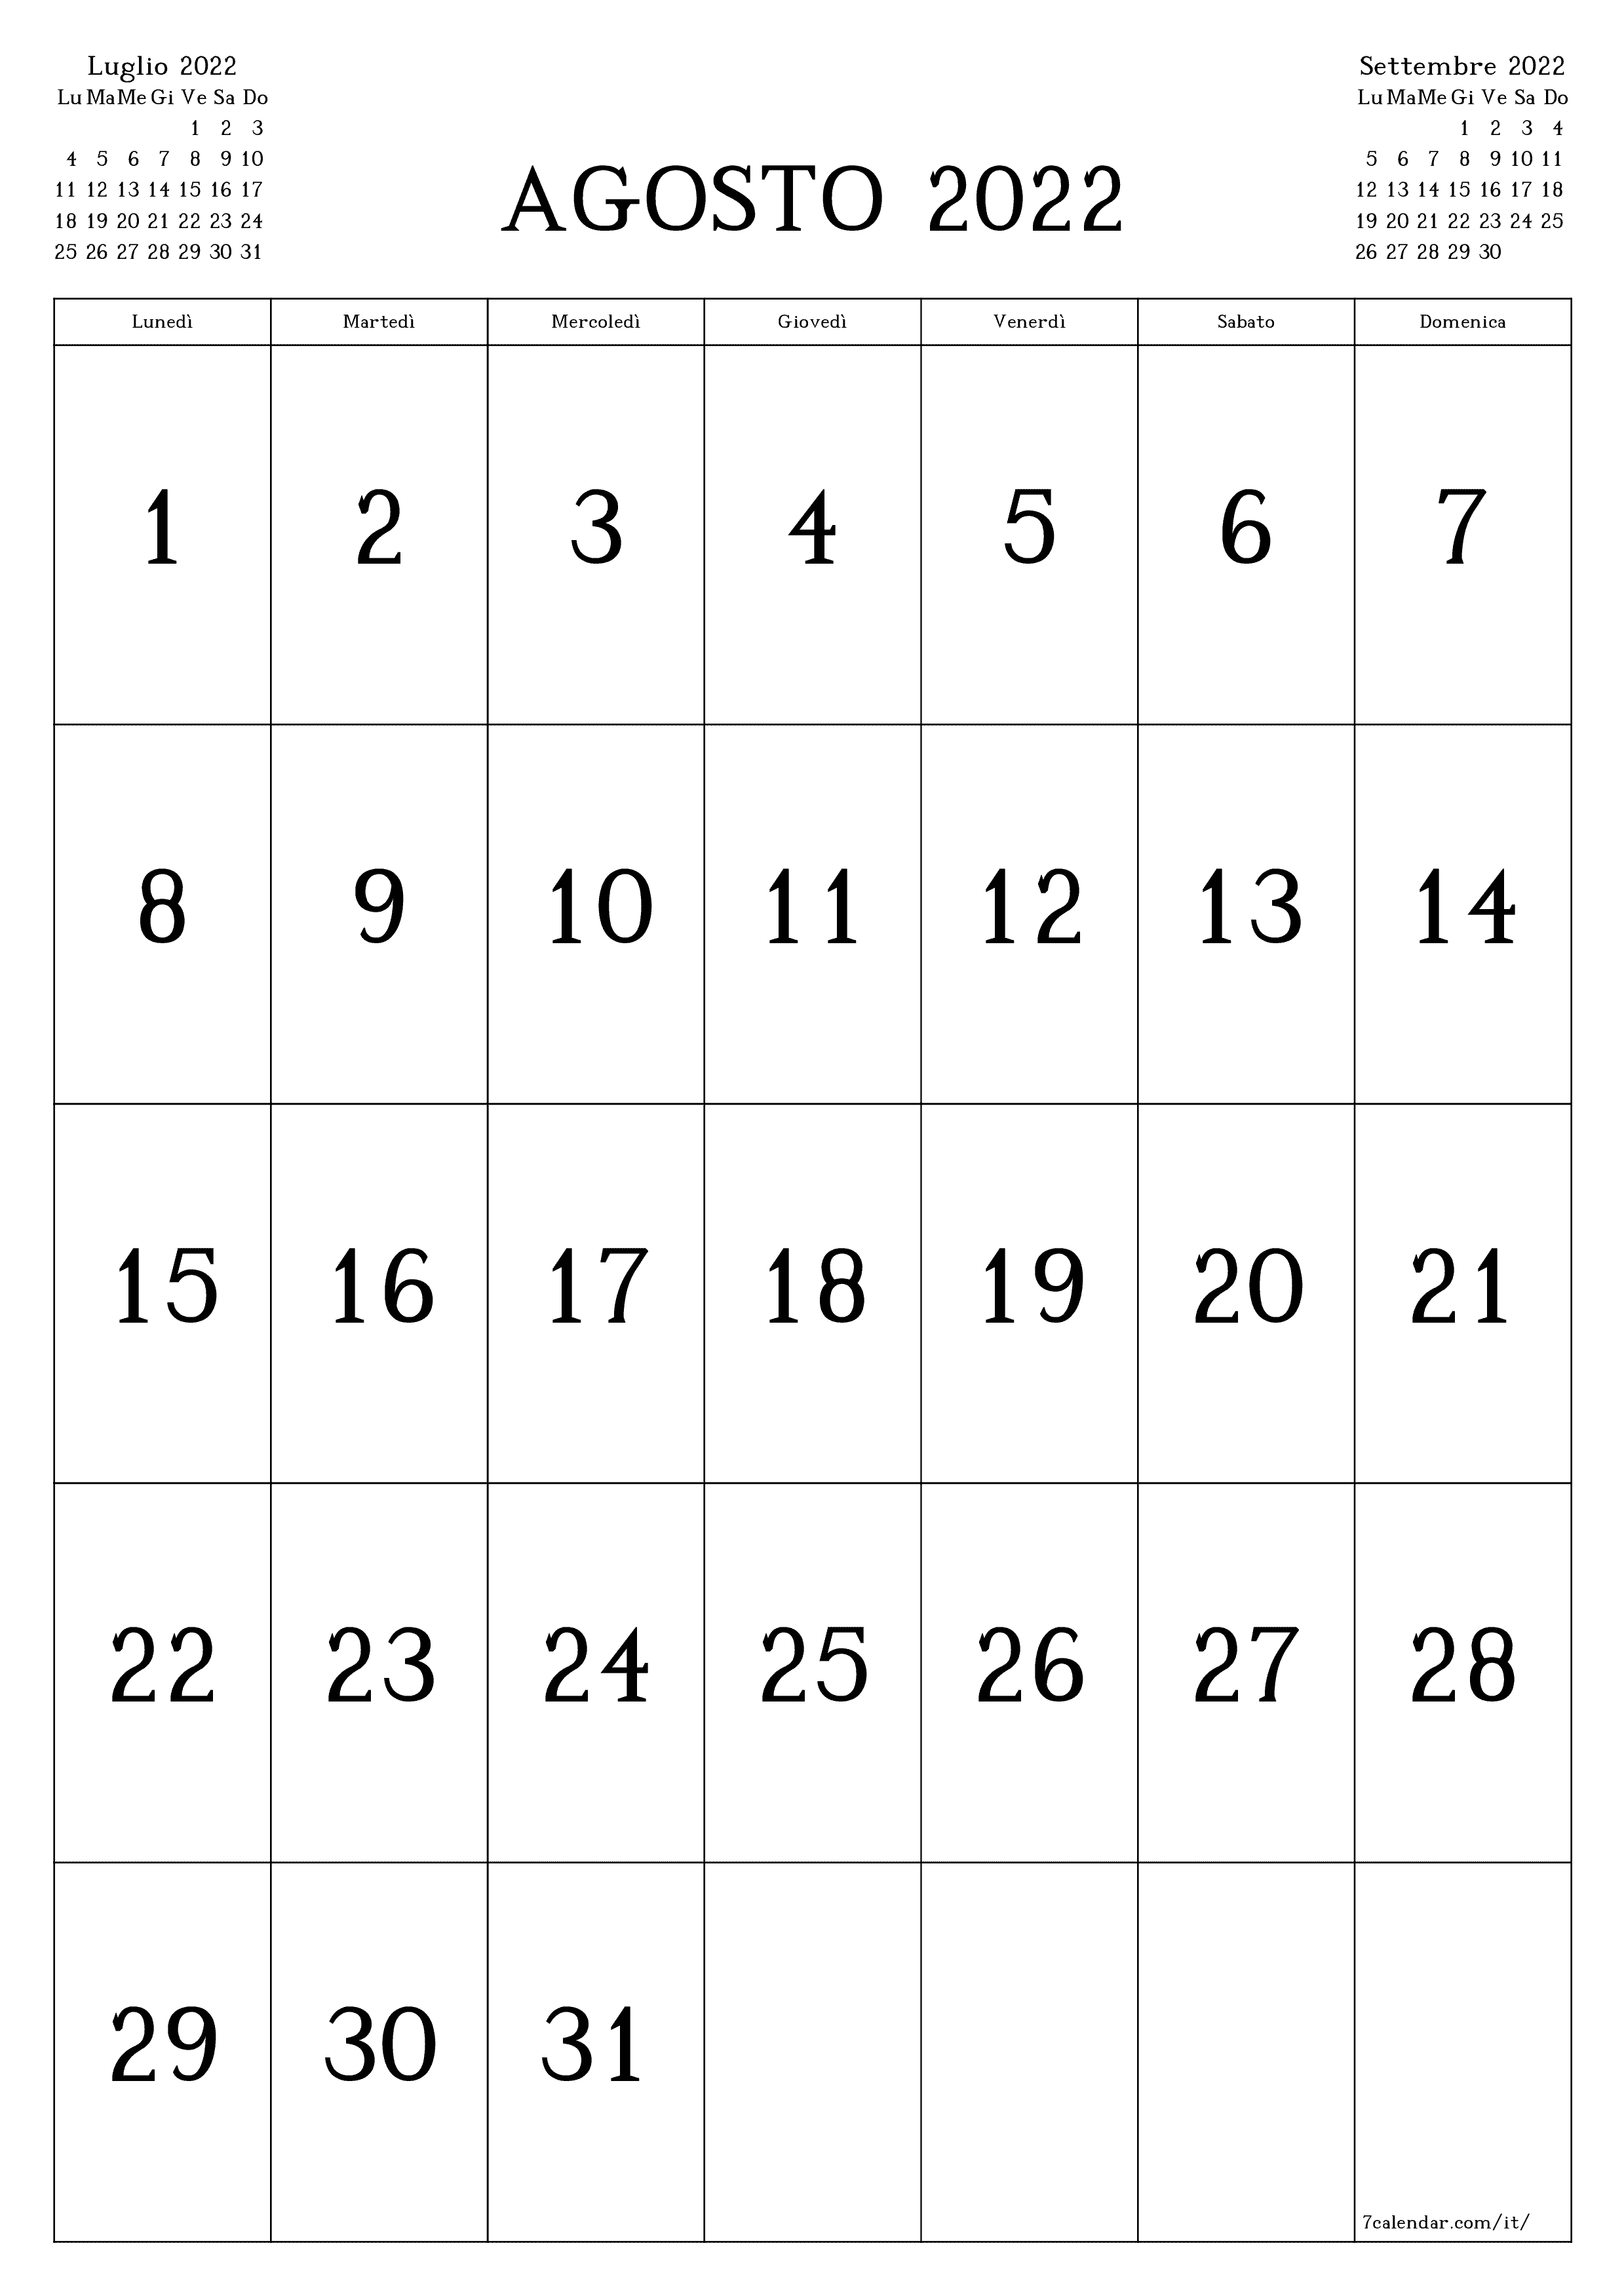 Calendario mensile vuoto per il mese Agosto 2022 salva e stampa in PDF PNG Italian - 7calendar.com